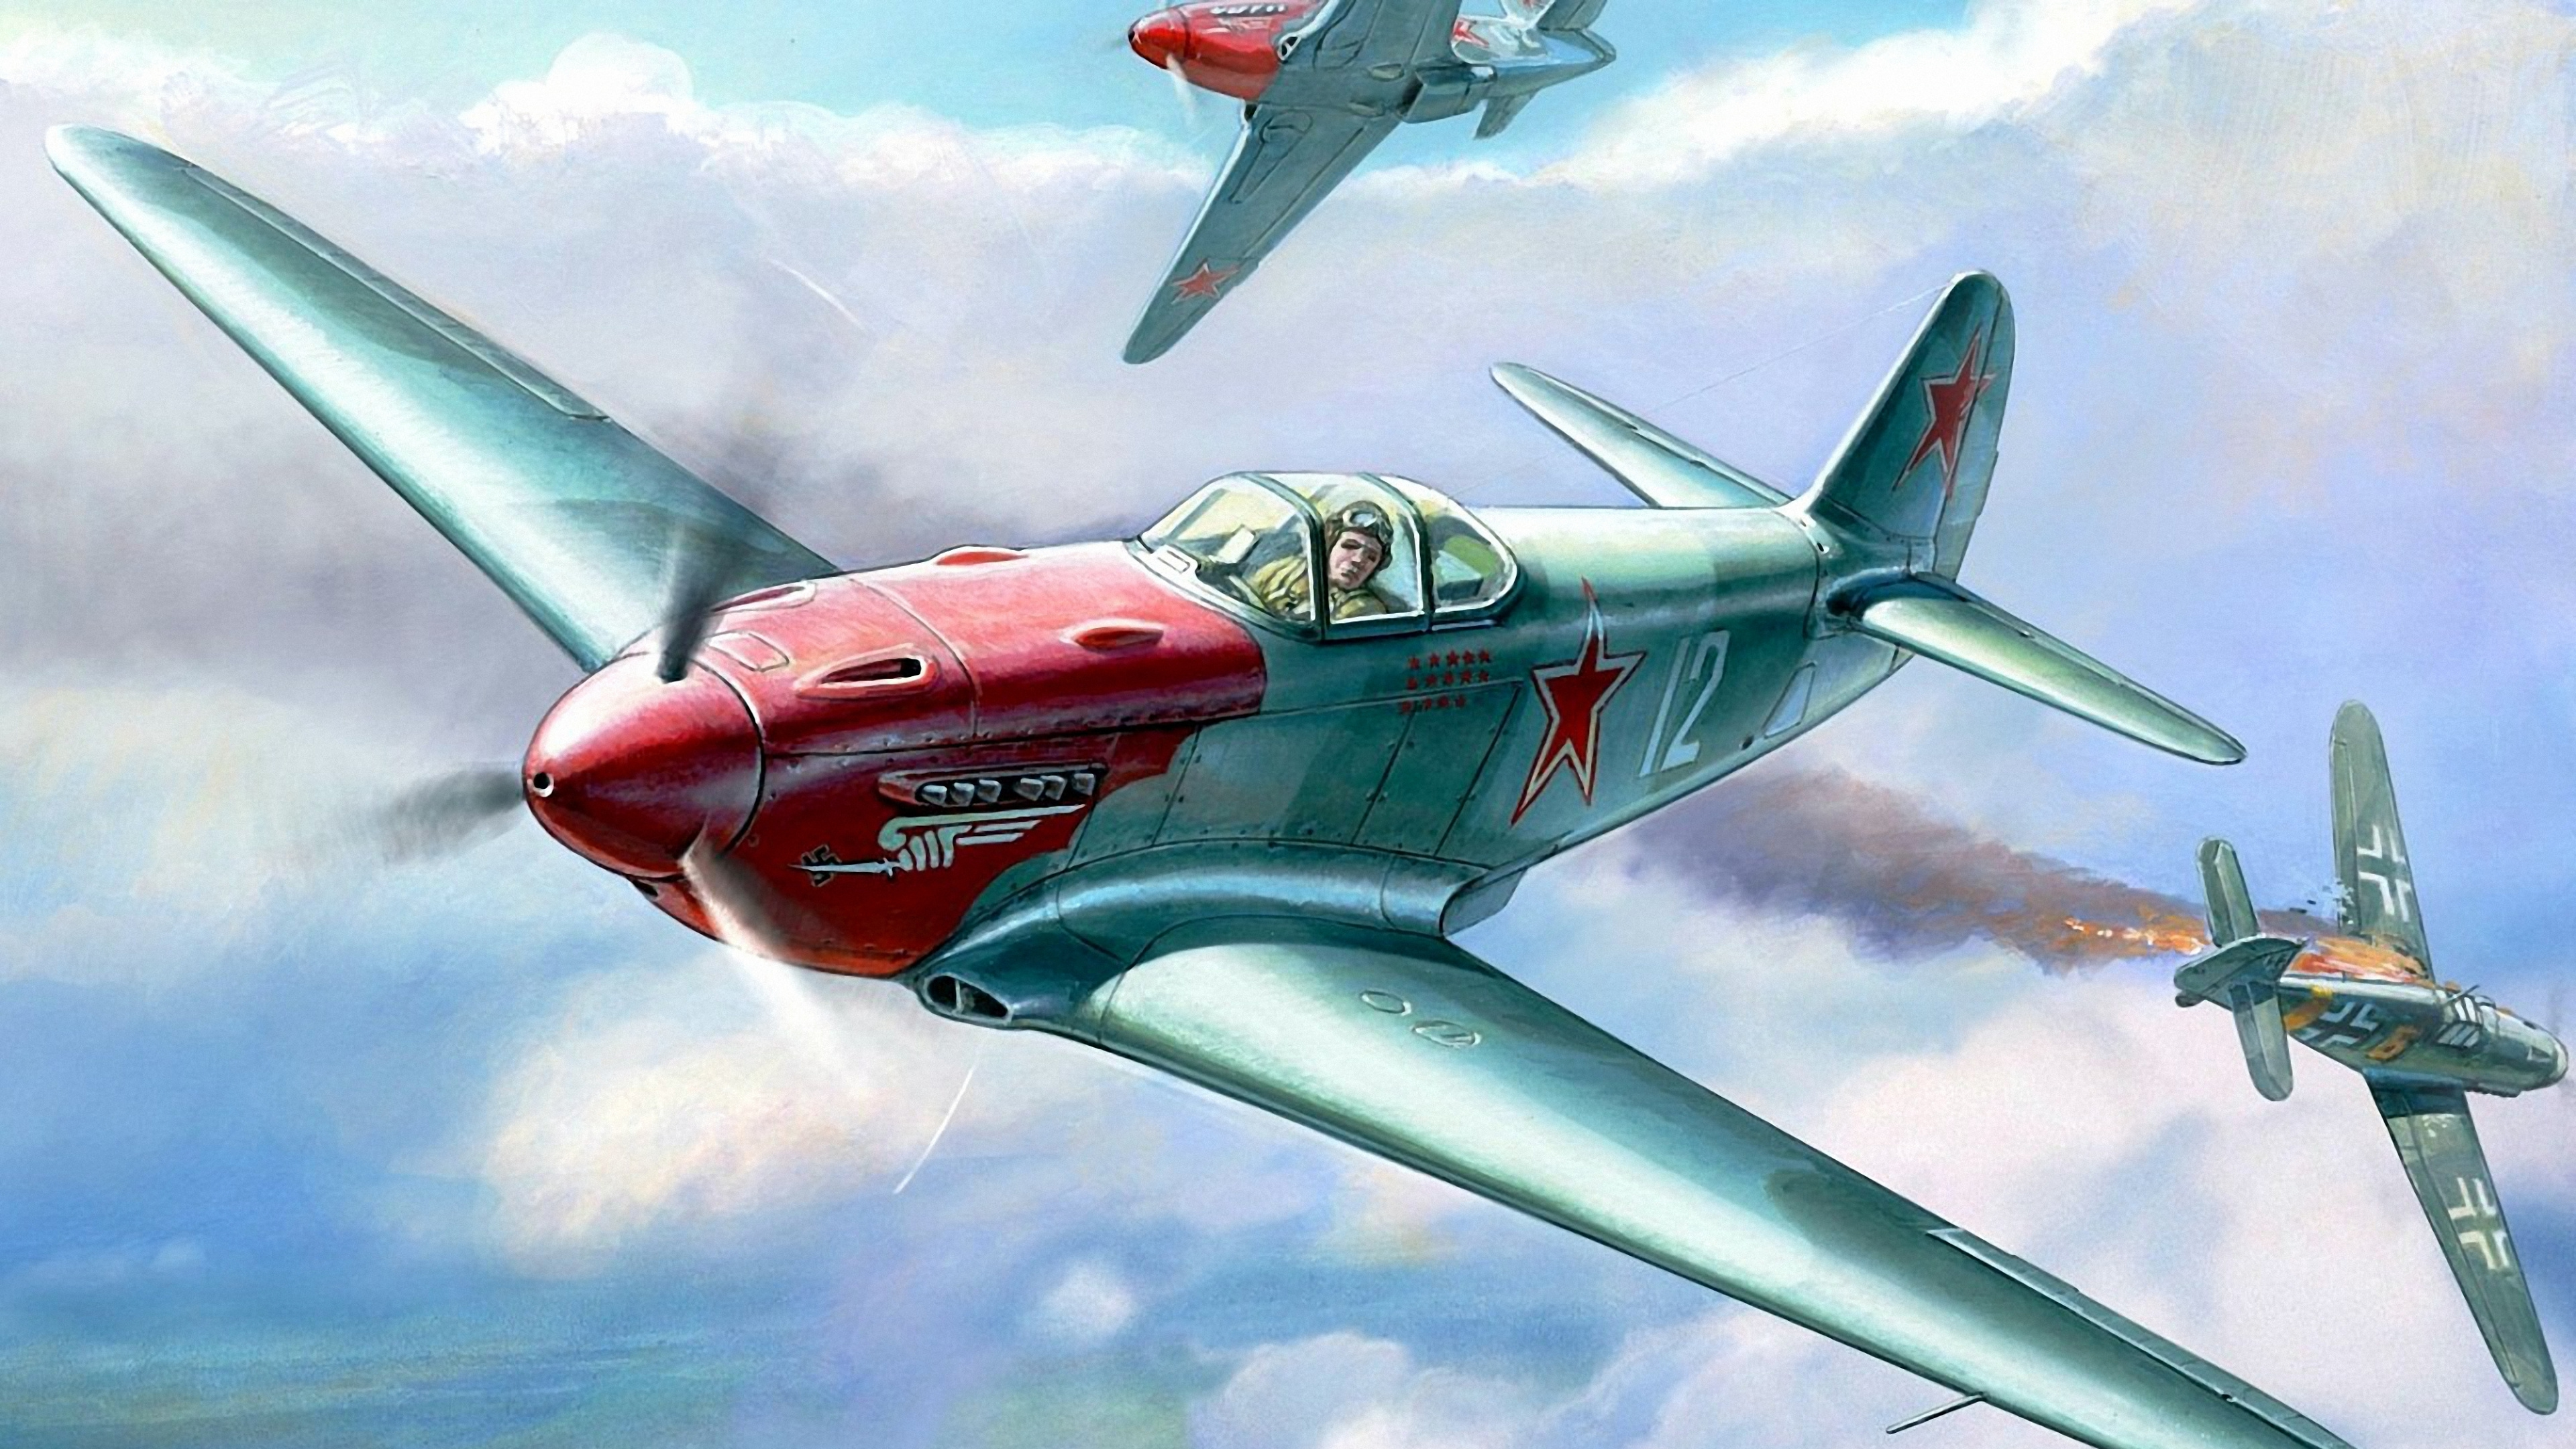 航空, 螺旋桨, 军用飞机, 雅科夫列夫牦牛9, 飞机发动机 壁纸 3840x2160 允许